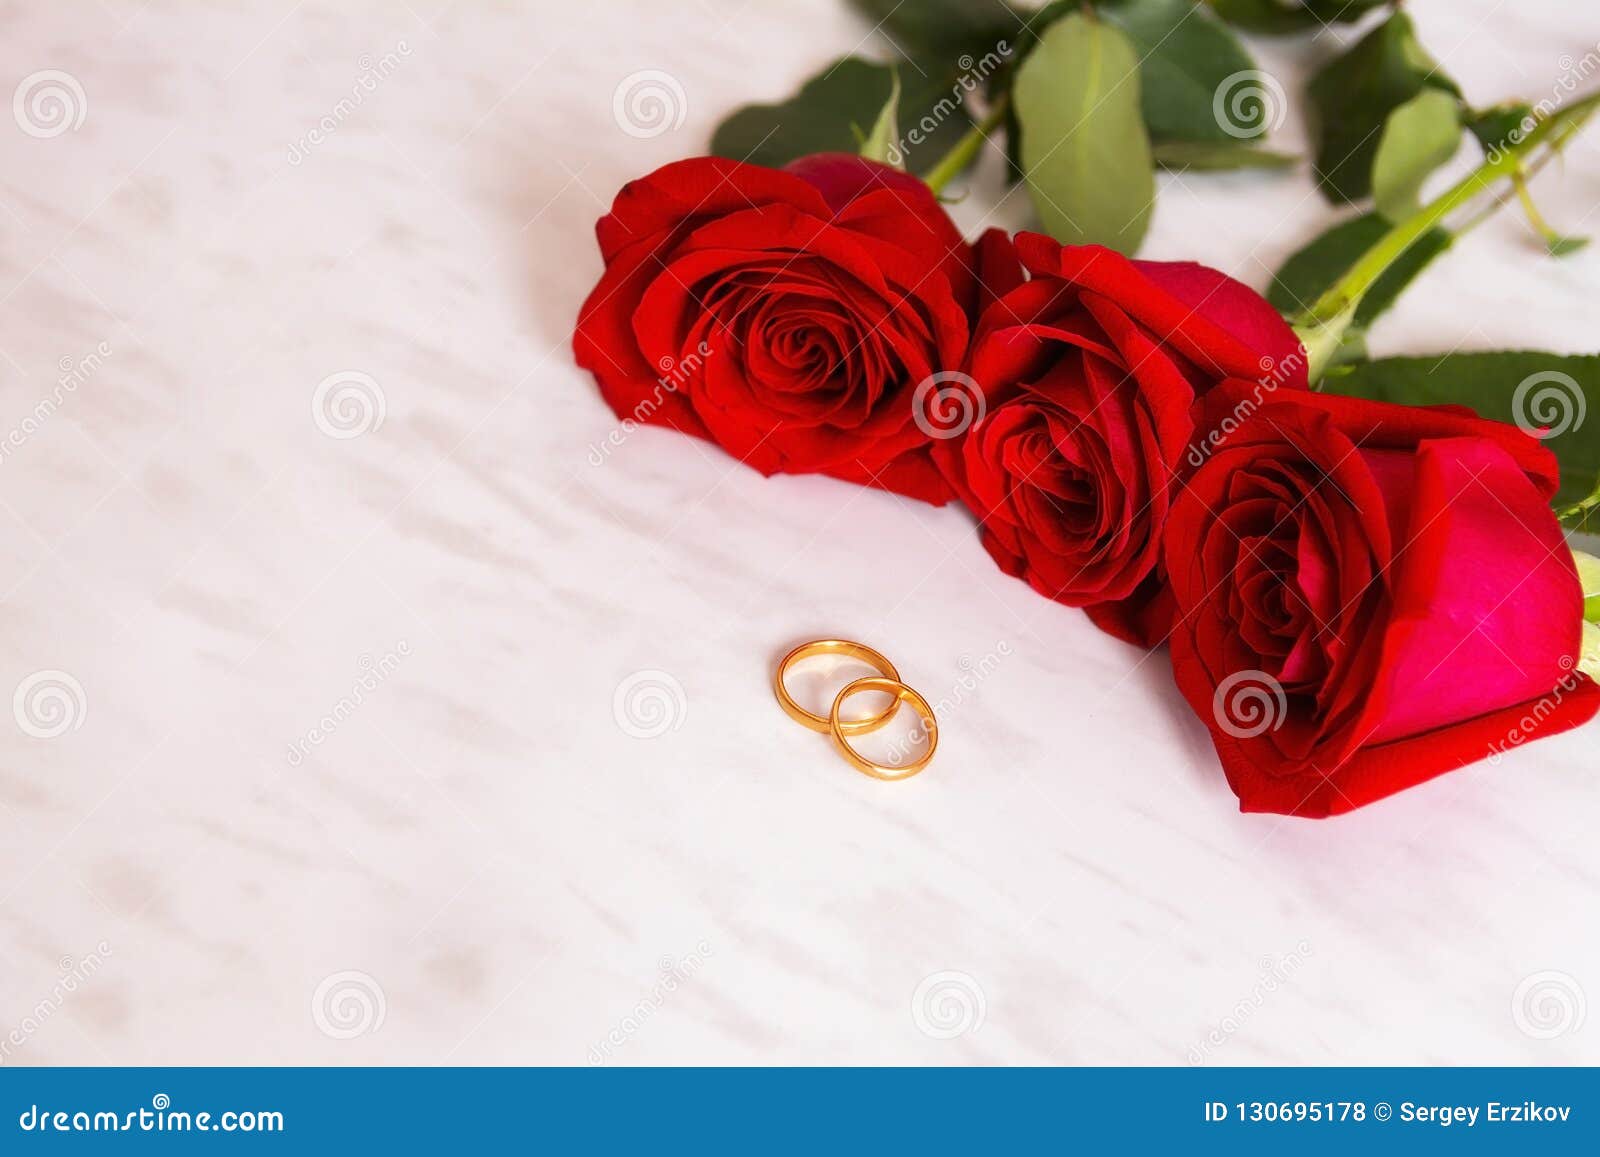 Zwei Eheringe Rote Rosen Fotos Kostenlose Und Royalty Free Stock Fotos Von Dreamstime